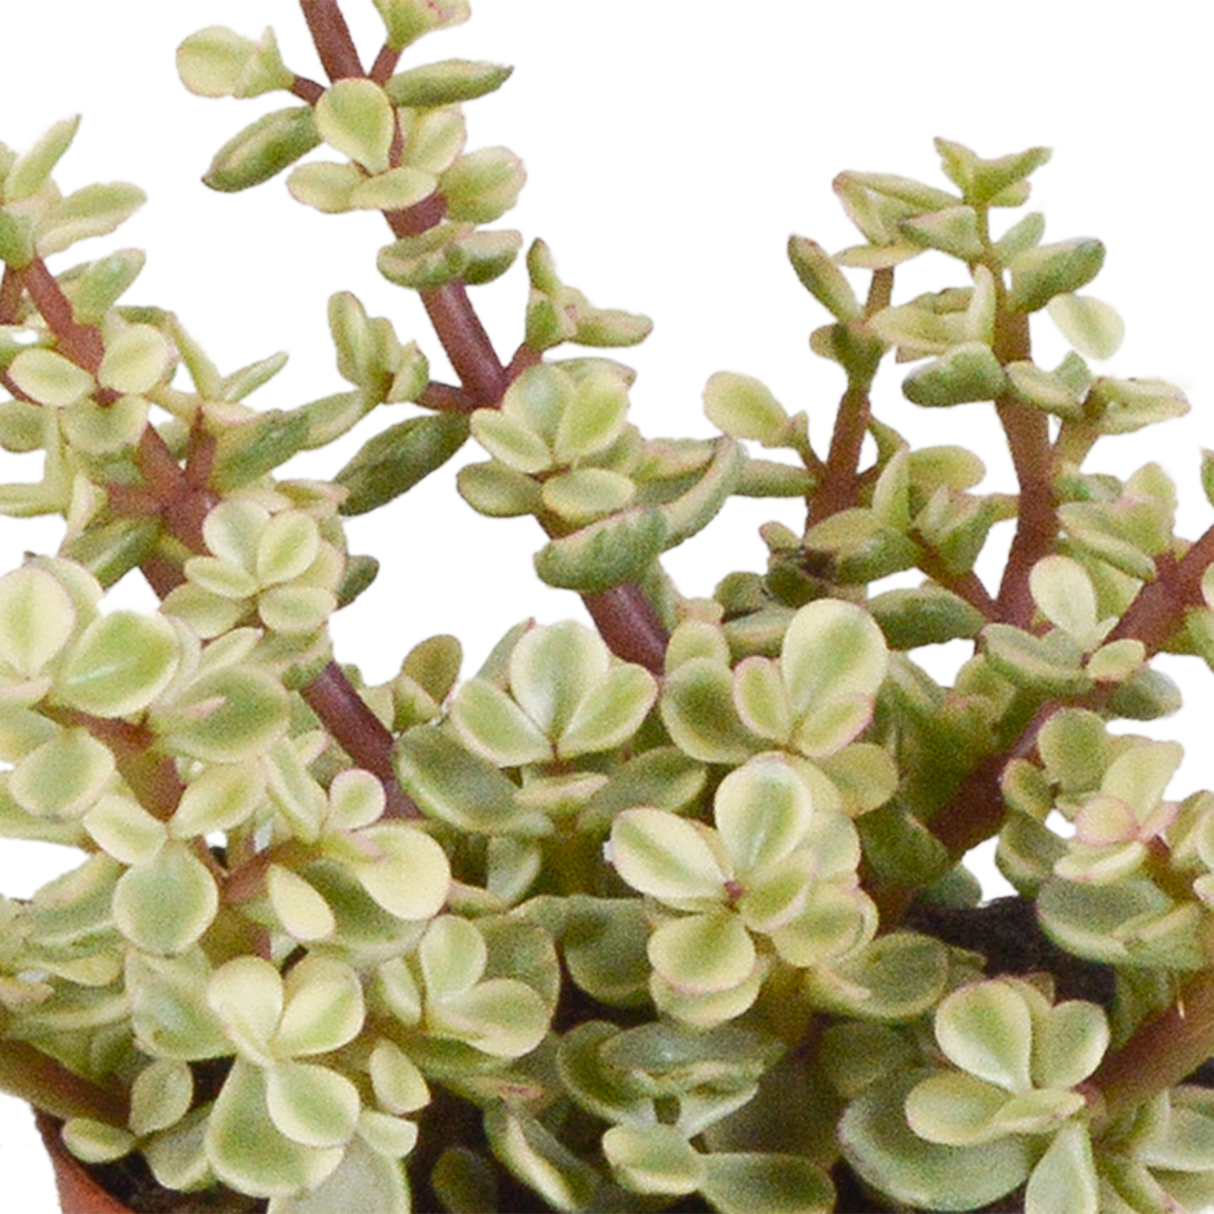 Crassula Ovata: Plante Succulente Facile à Cultiver pour Intérieur – La  Green Touch